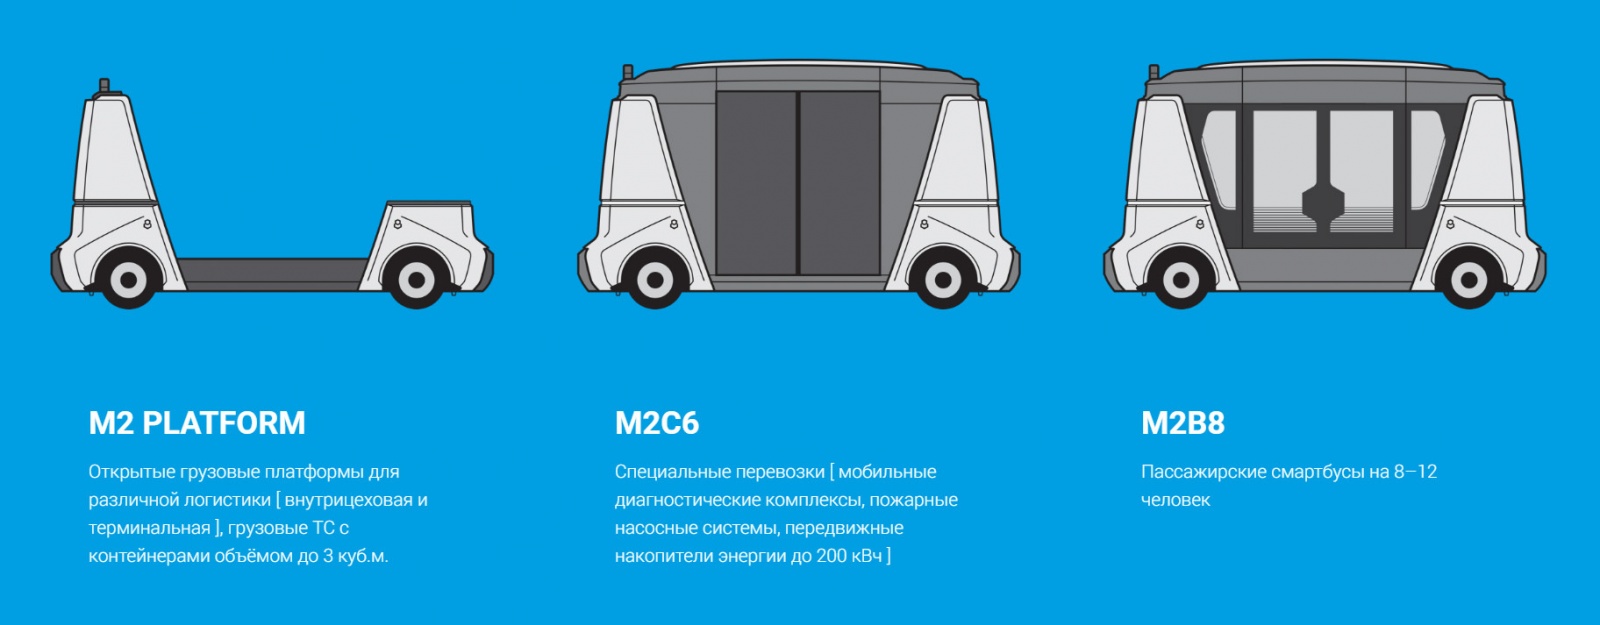 MATRЁSHKA – модульная система беспилотного коммерческого транспорта - 2